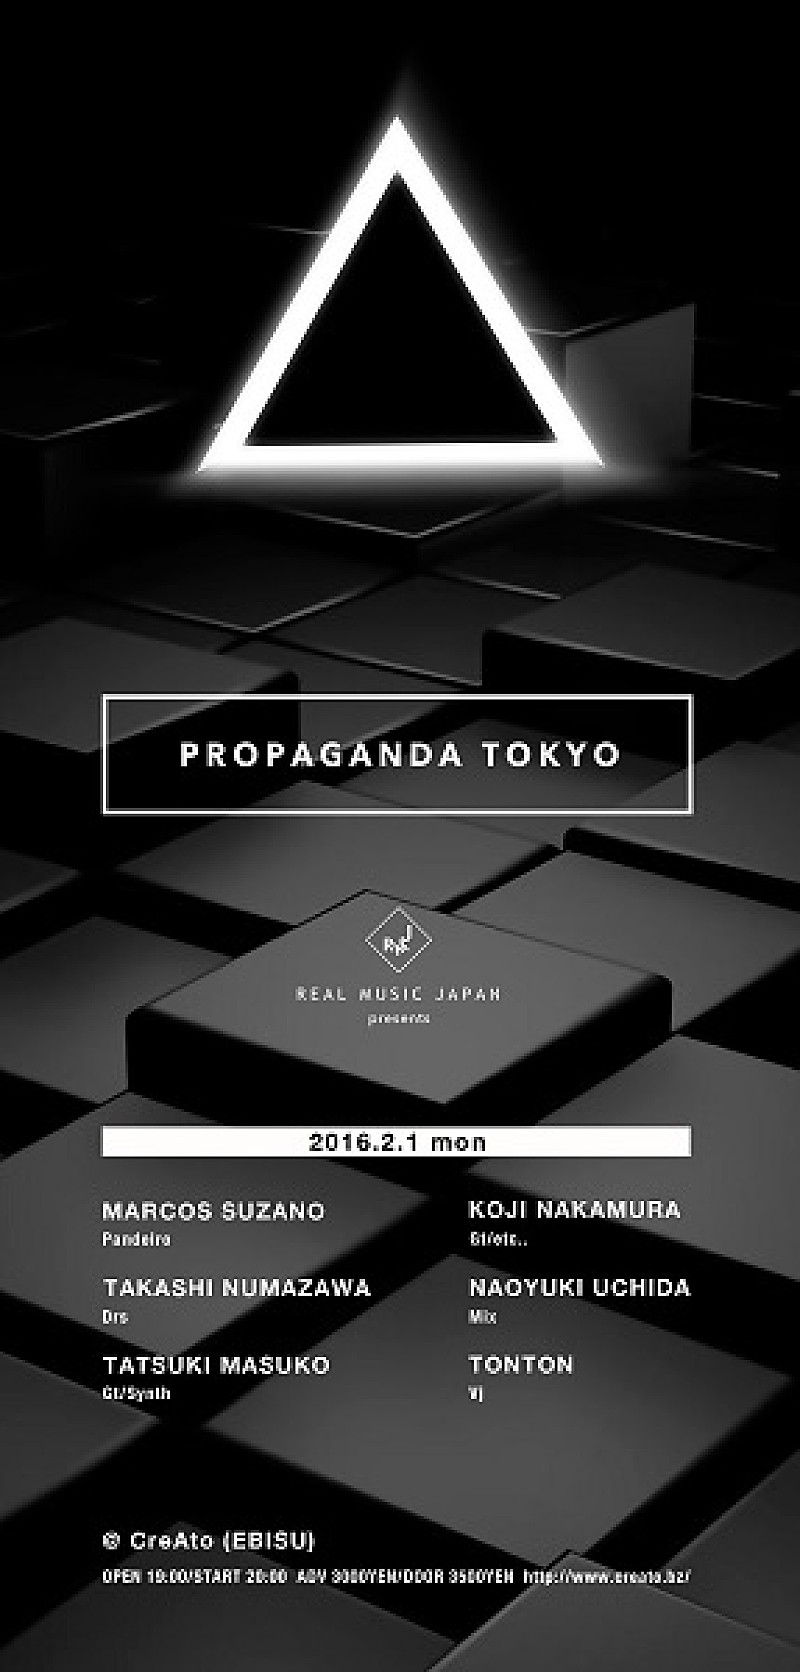 世界で活躍するミュージシャン×クリエイターによる次世代アートプロジェクトPOROPAGANDA TOKYO始動、マルコス・スザーノや沼澤尚らが出演